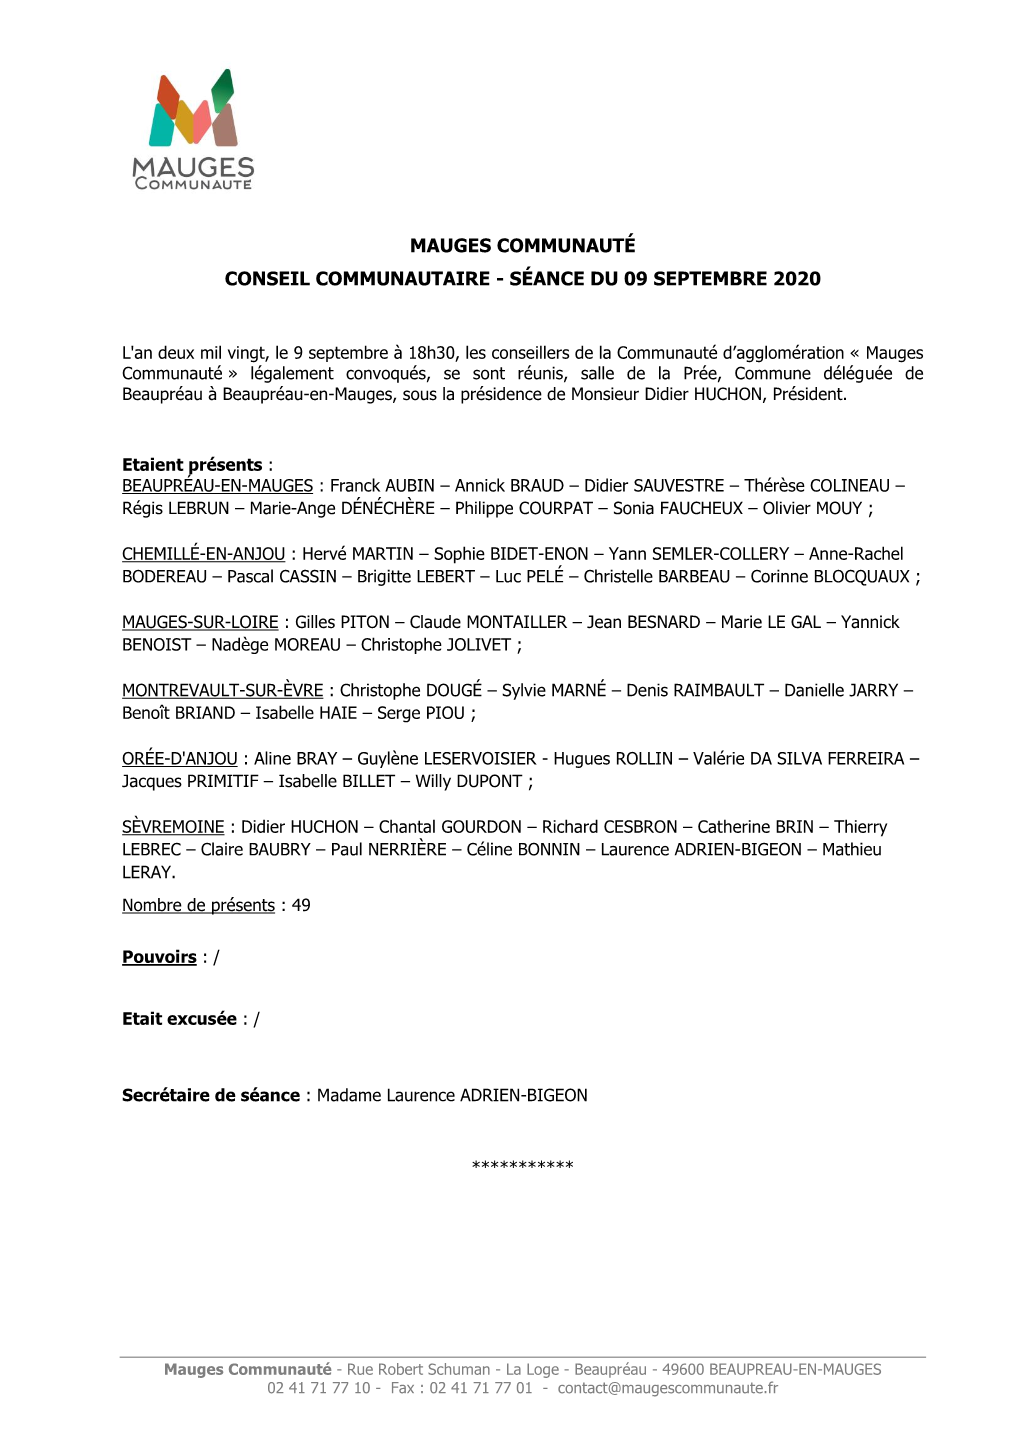 Mauges Communauté Conseil Communautaire - Séance Du 09 Septembre 2020